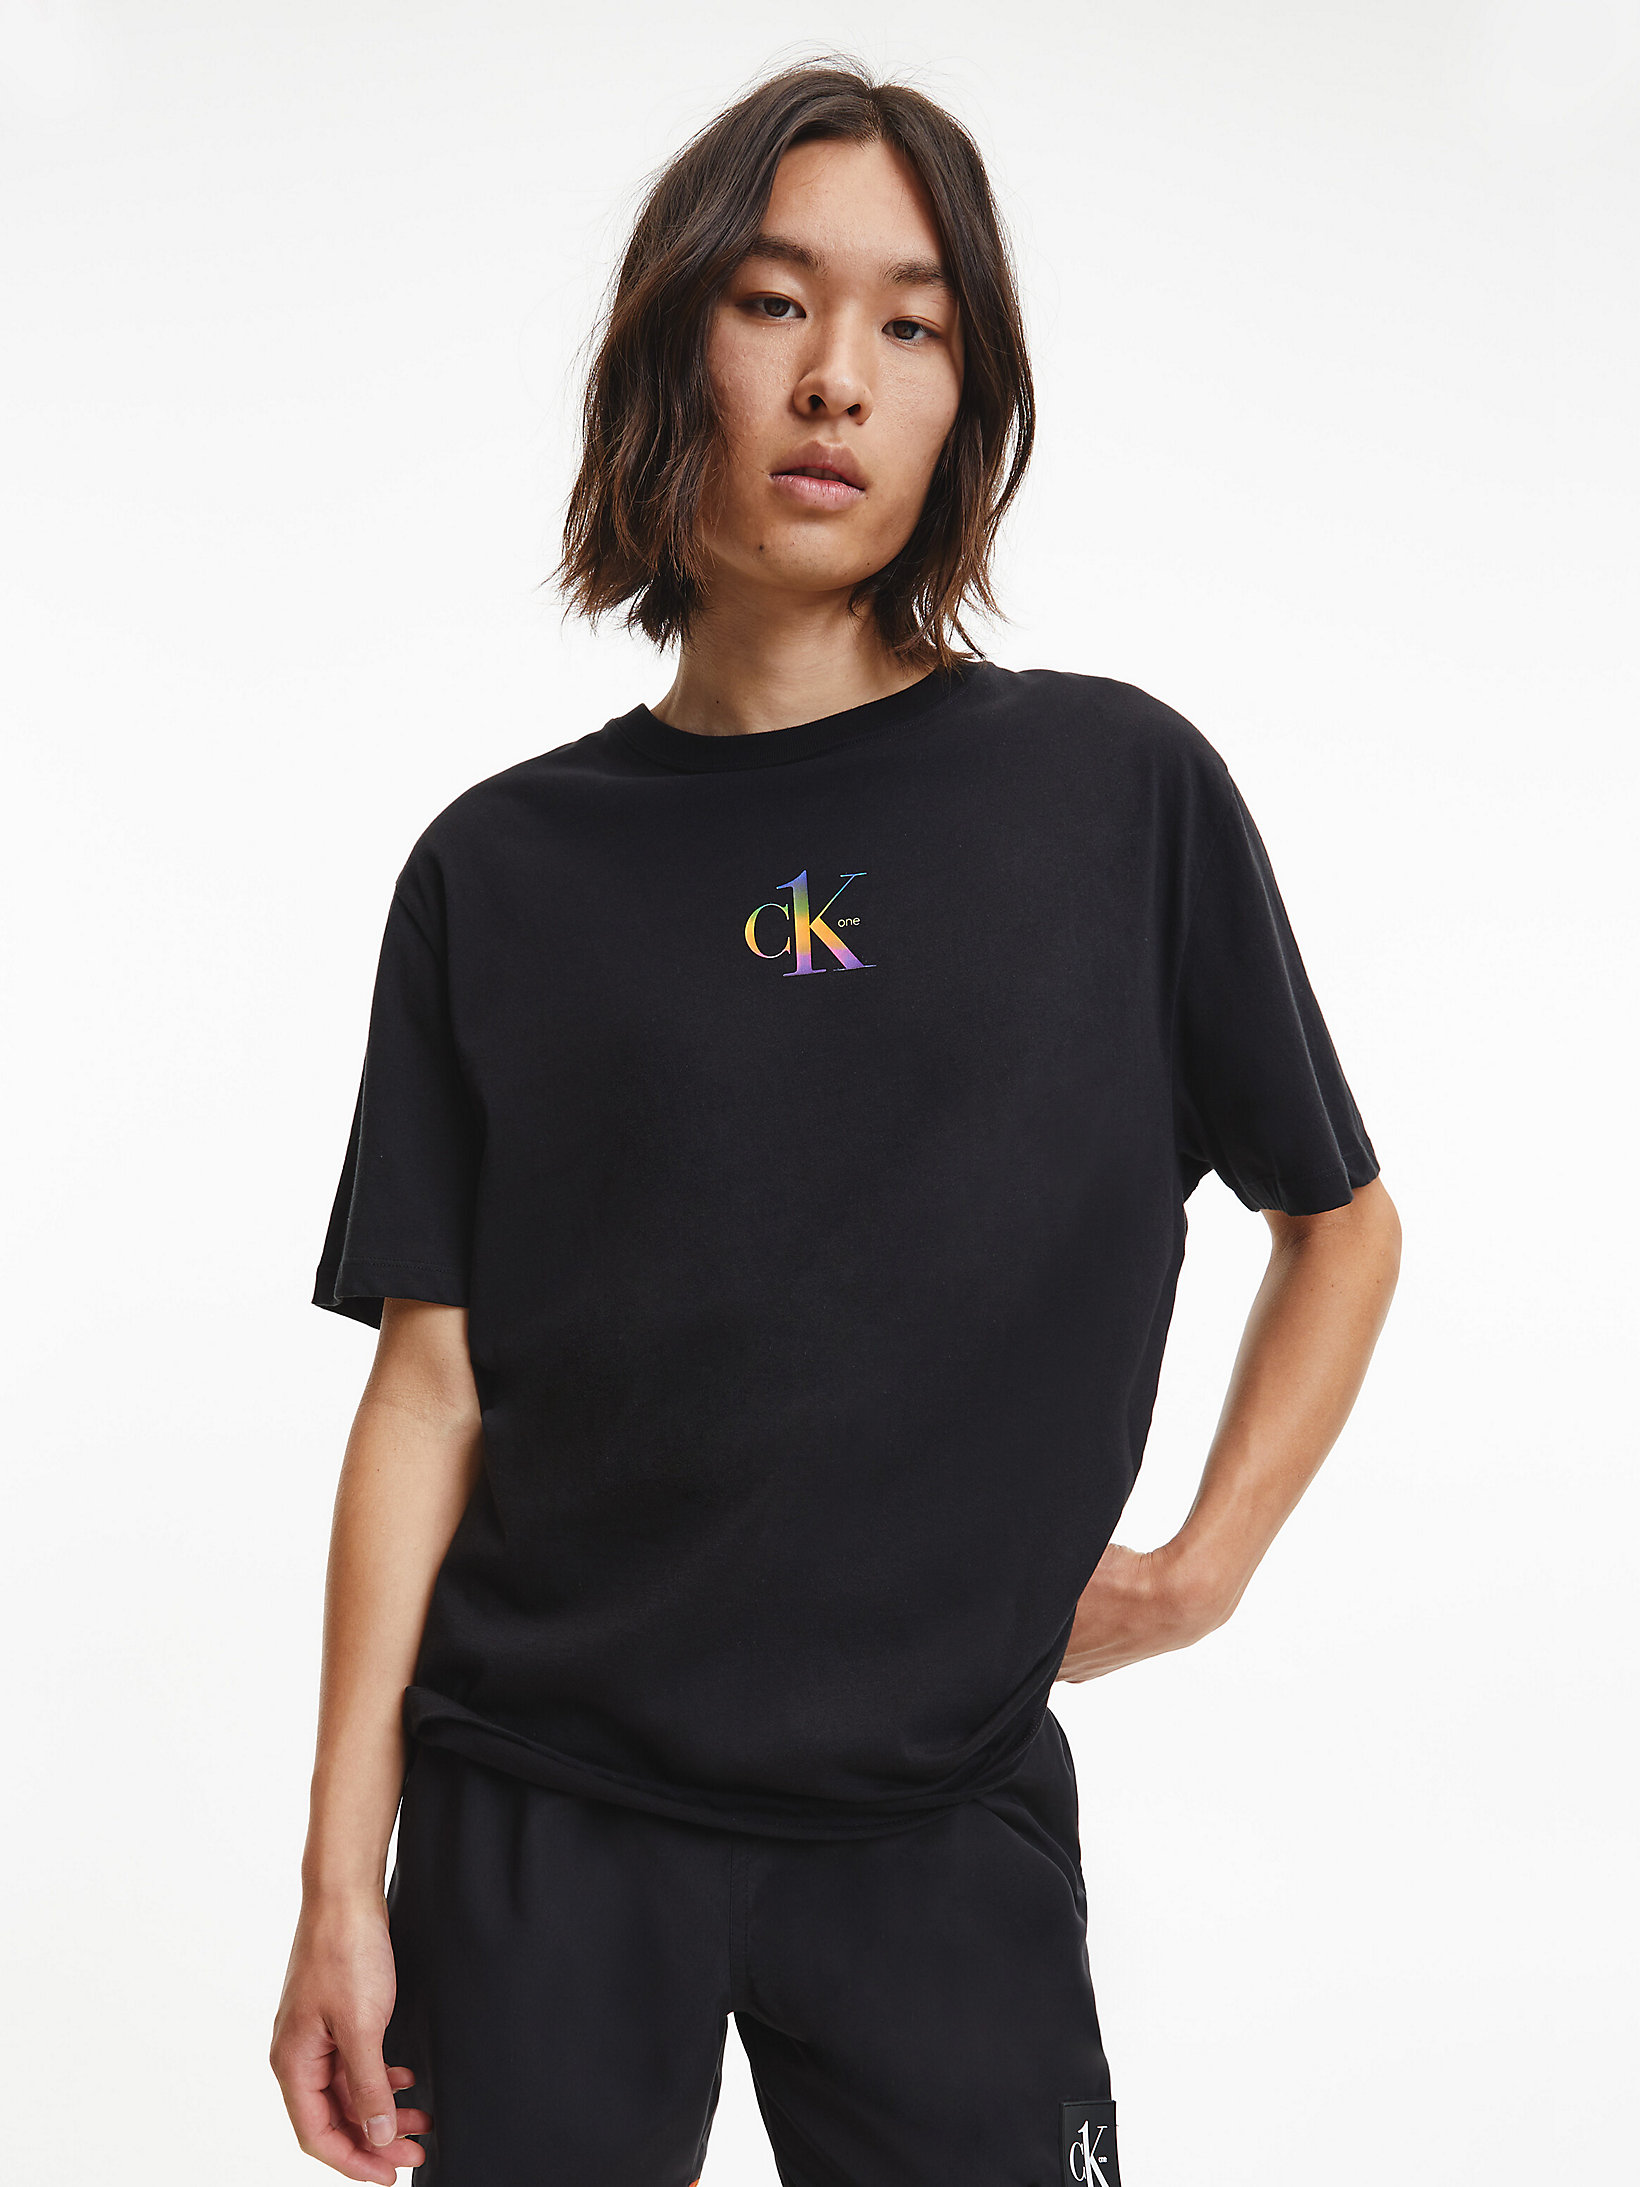 Pvh Black > Unisex Strand T-Shirt - Pride > undefined unisex - Calvin Klein